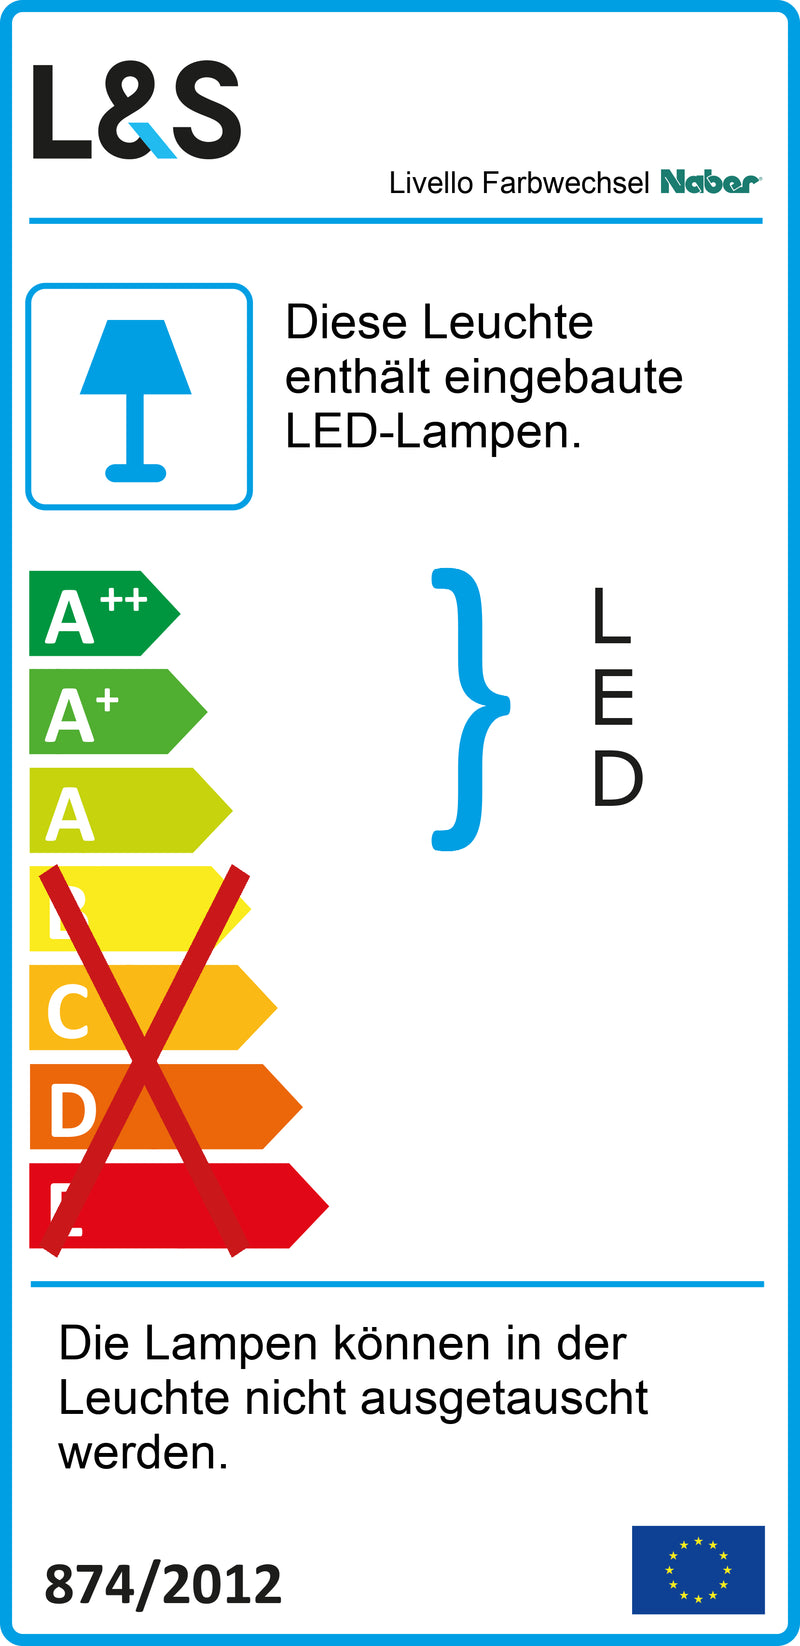 E-Label zu Zeichnung zu Livello Farbwechsel LED als Variante Set-3, schwarz von Naber GmbH in der Kategorie Lichttechnik in Österreich auf conceptshop.at